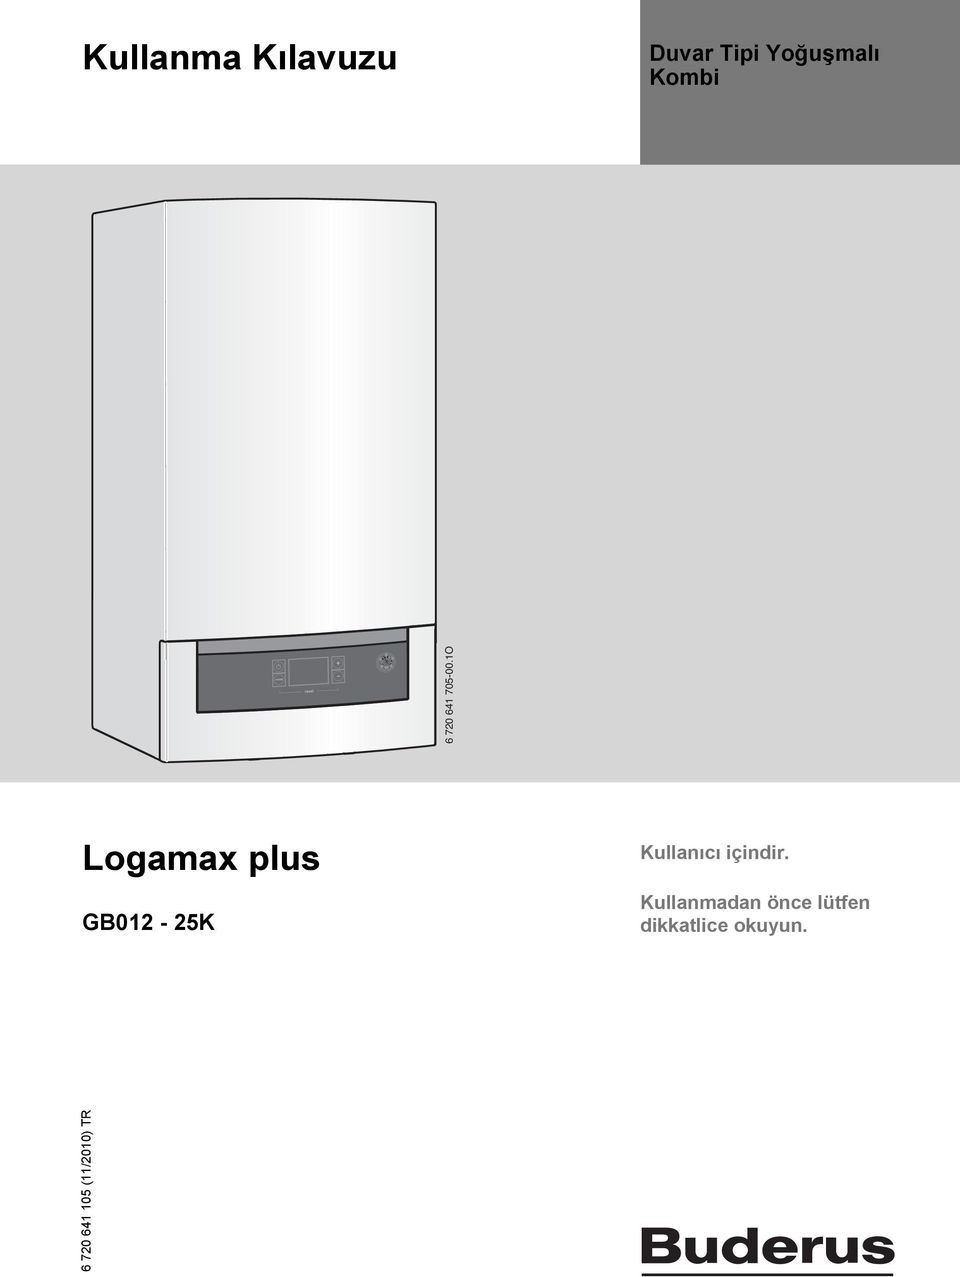 1O Logamax plus GB012-25K Kullanıcı içindir.